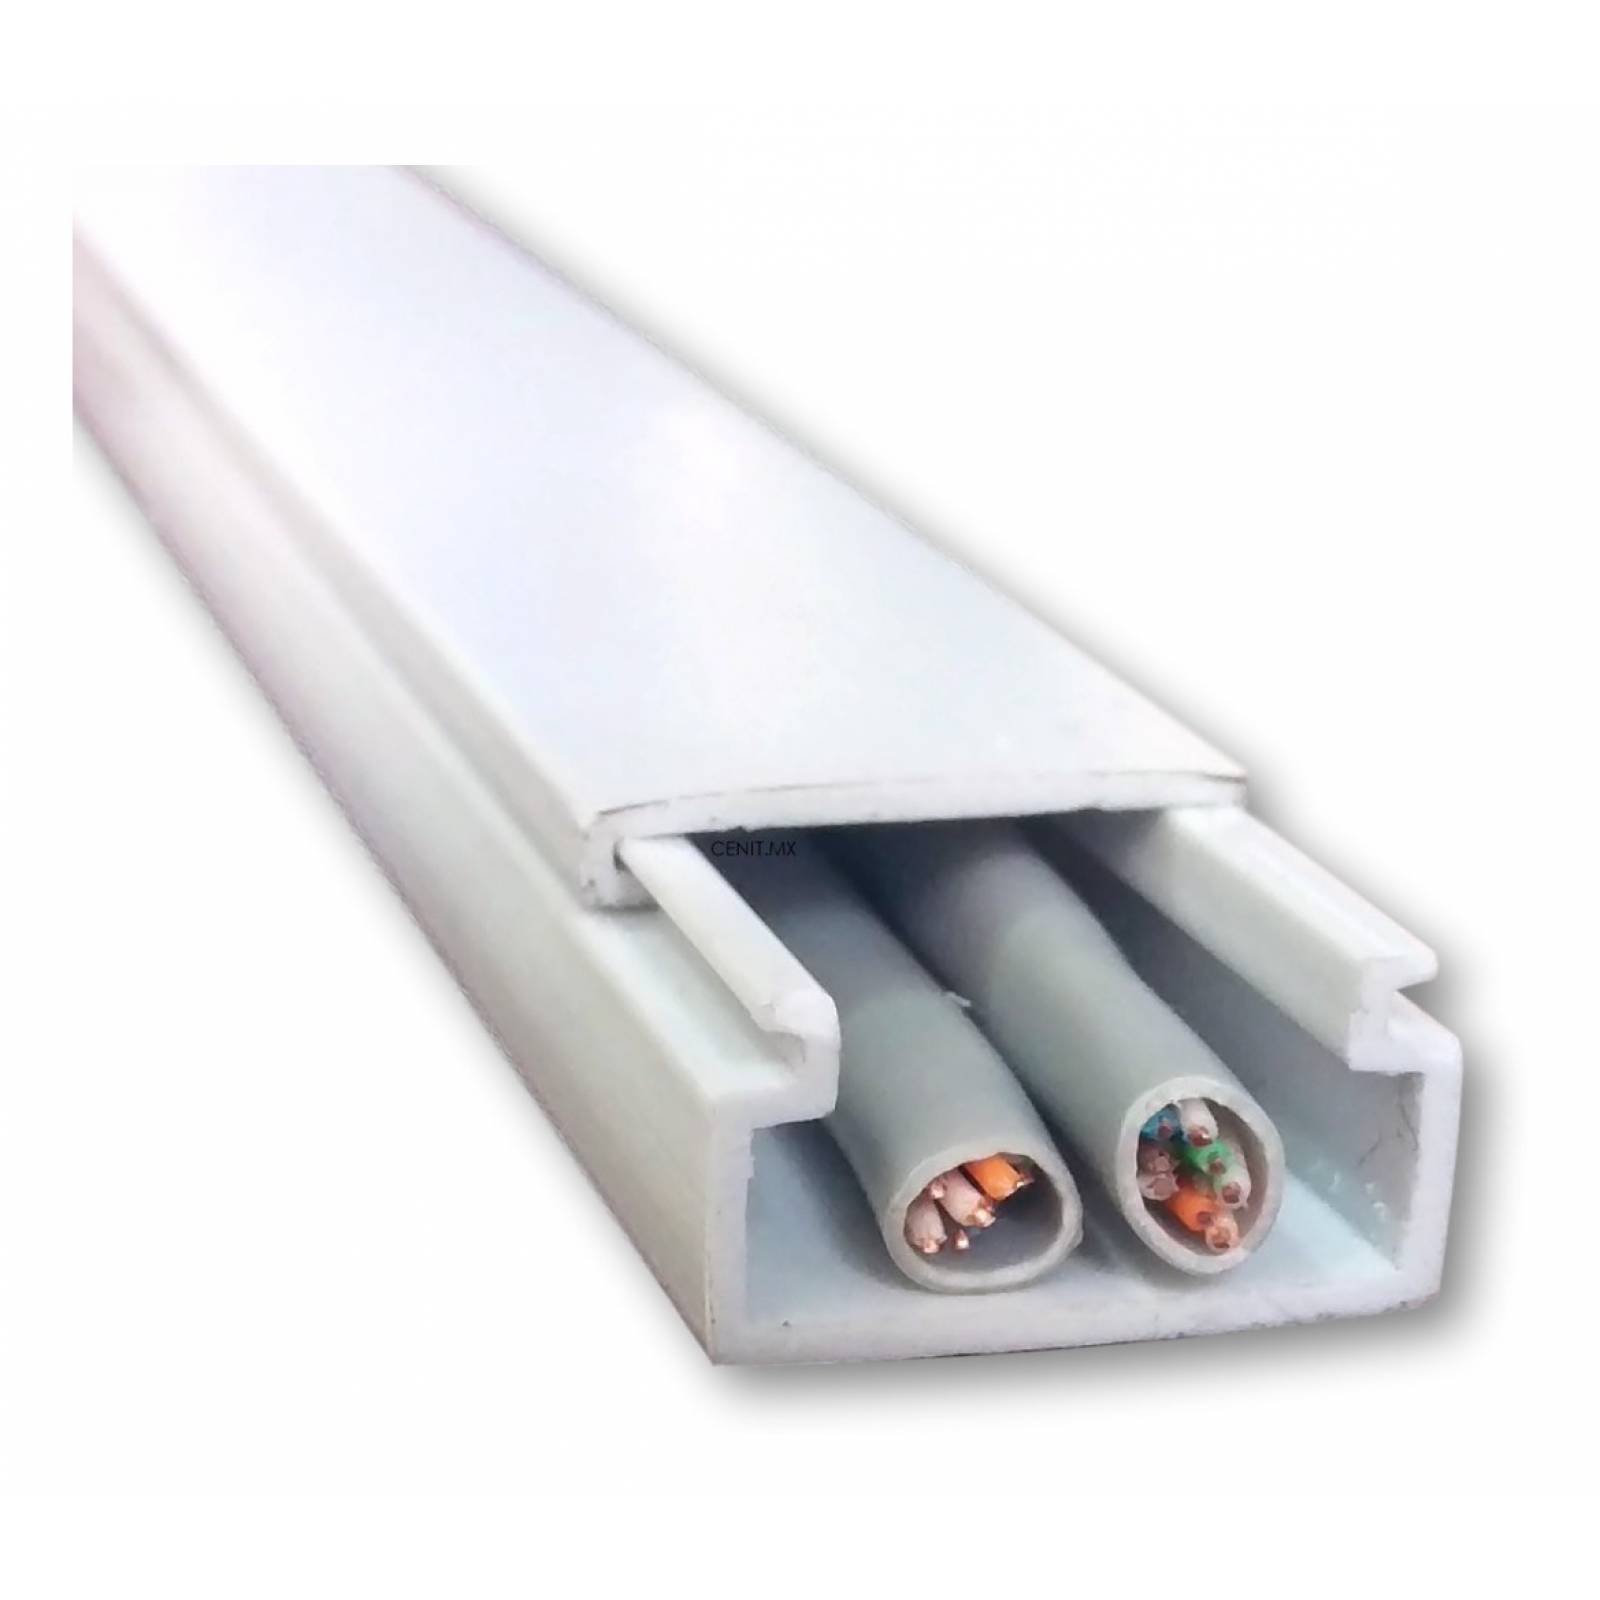 Canaleta para cables (L x An x Al: 2 m x 60 mm x 40 mm, Blanco)